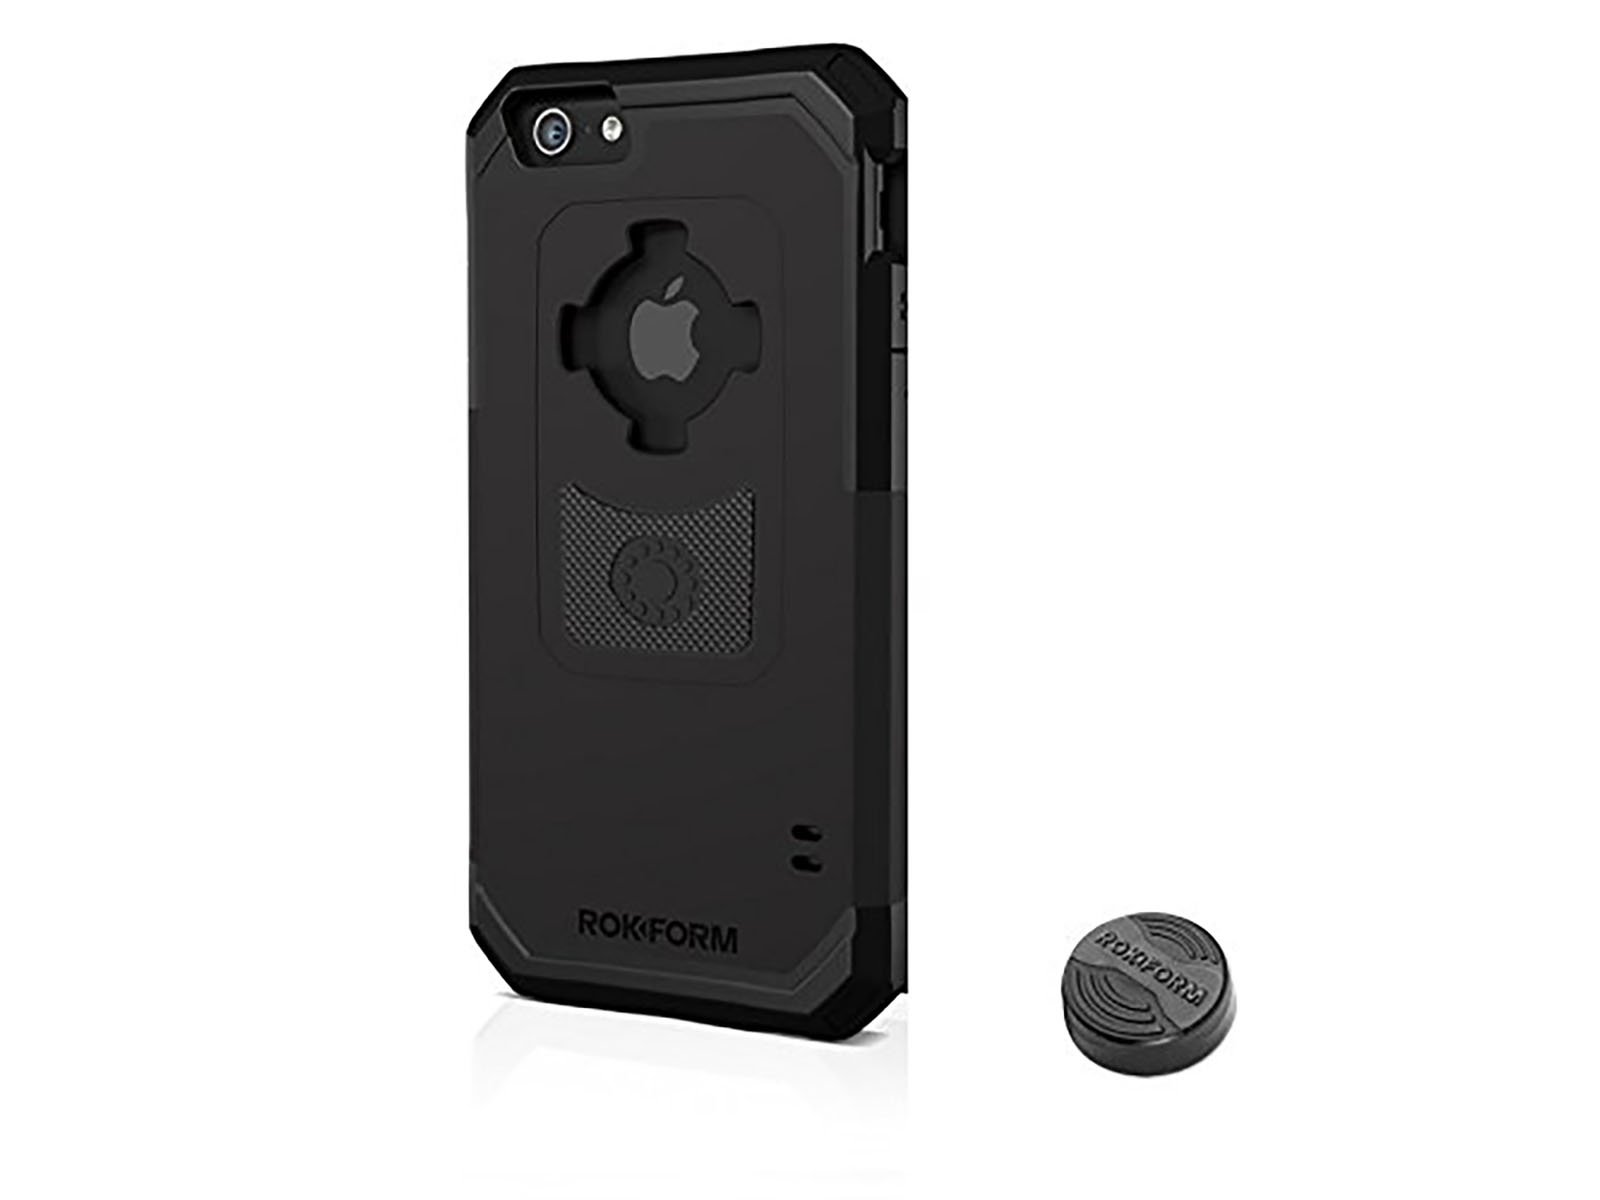 Rokform iPhone 6 case